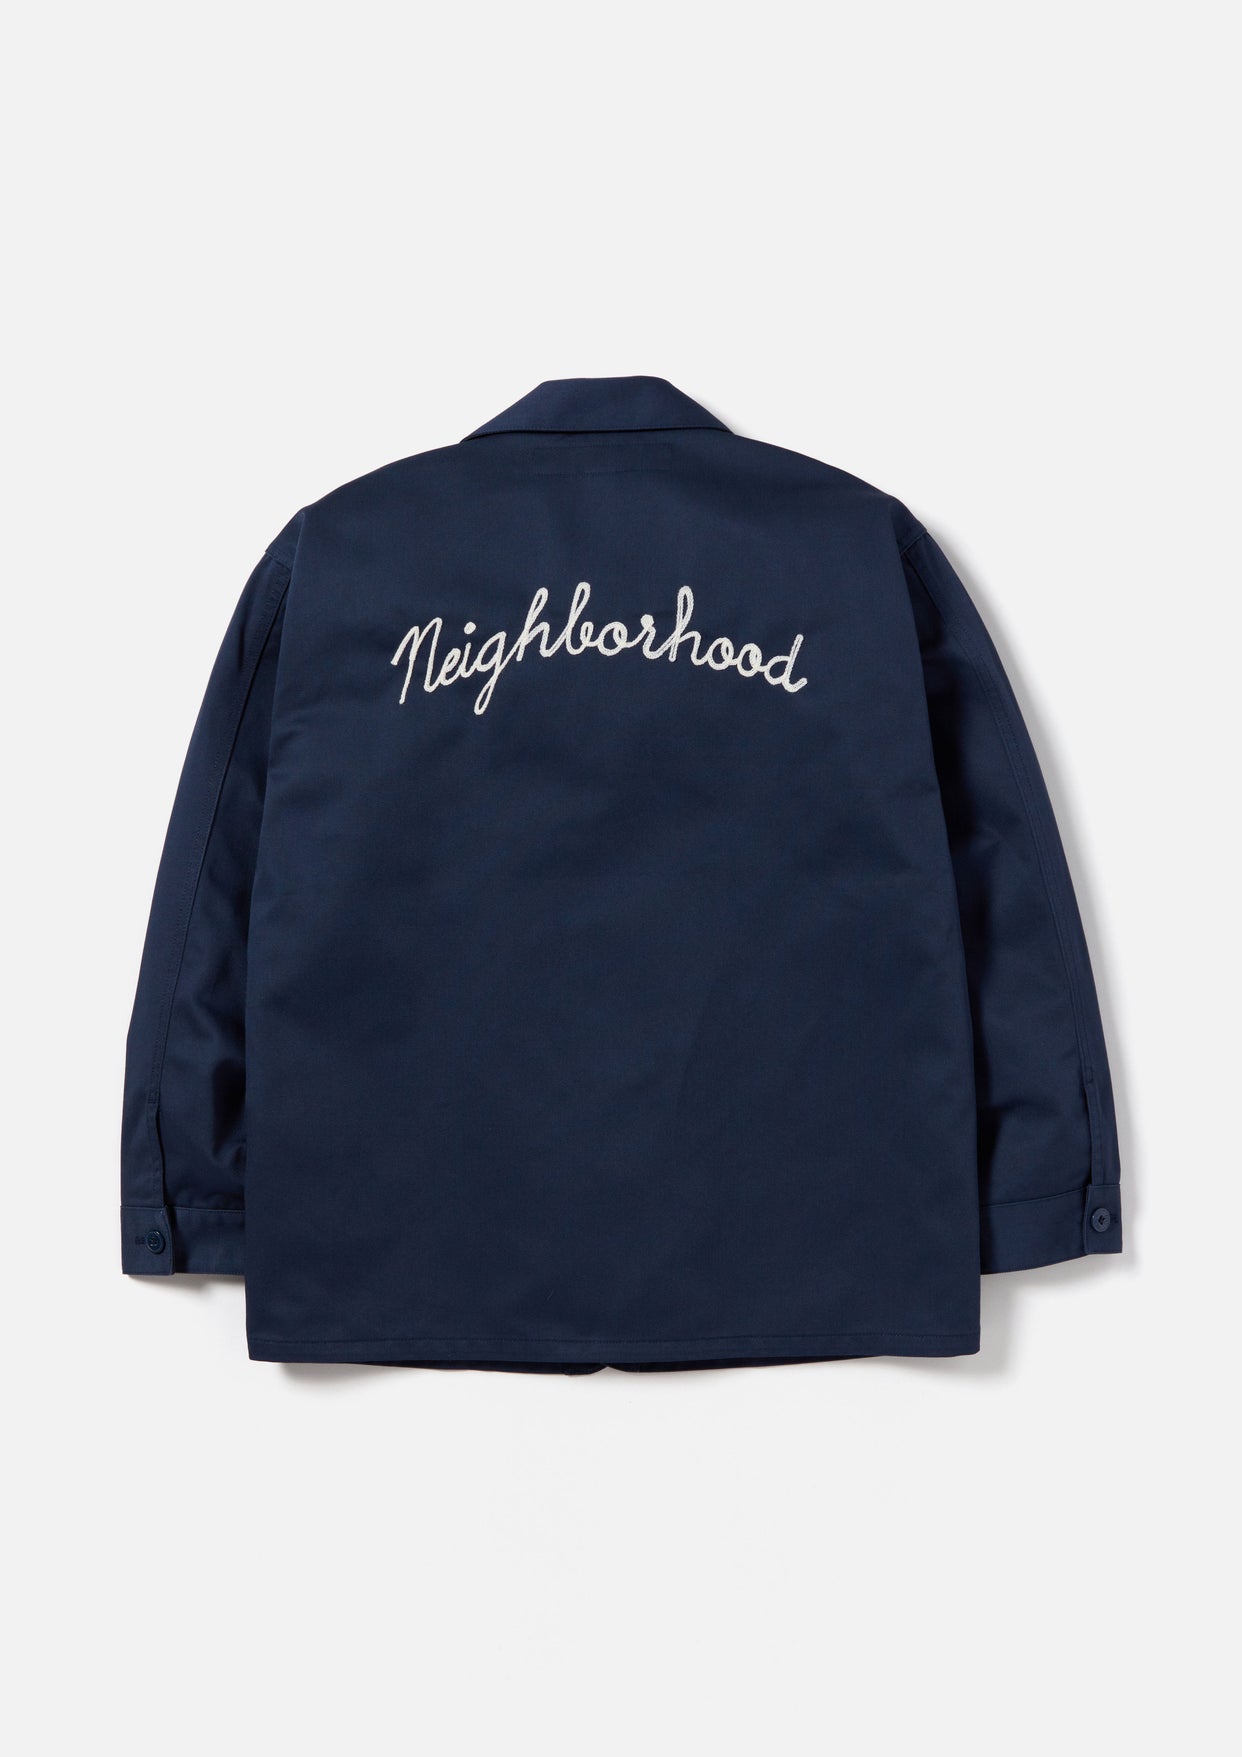 NEIGHBORHOOD DICKIES Coverall Jacket パンツ